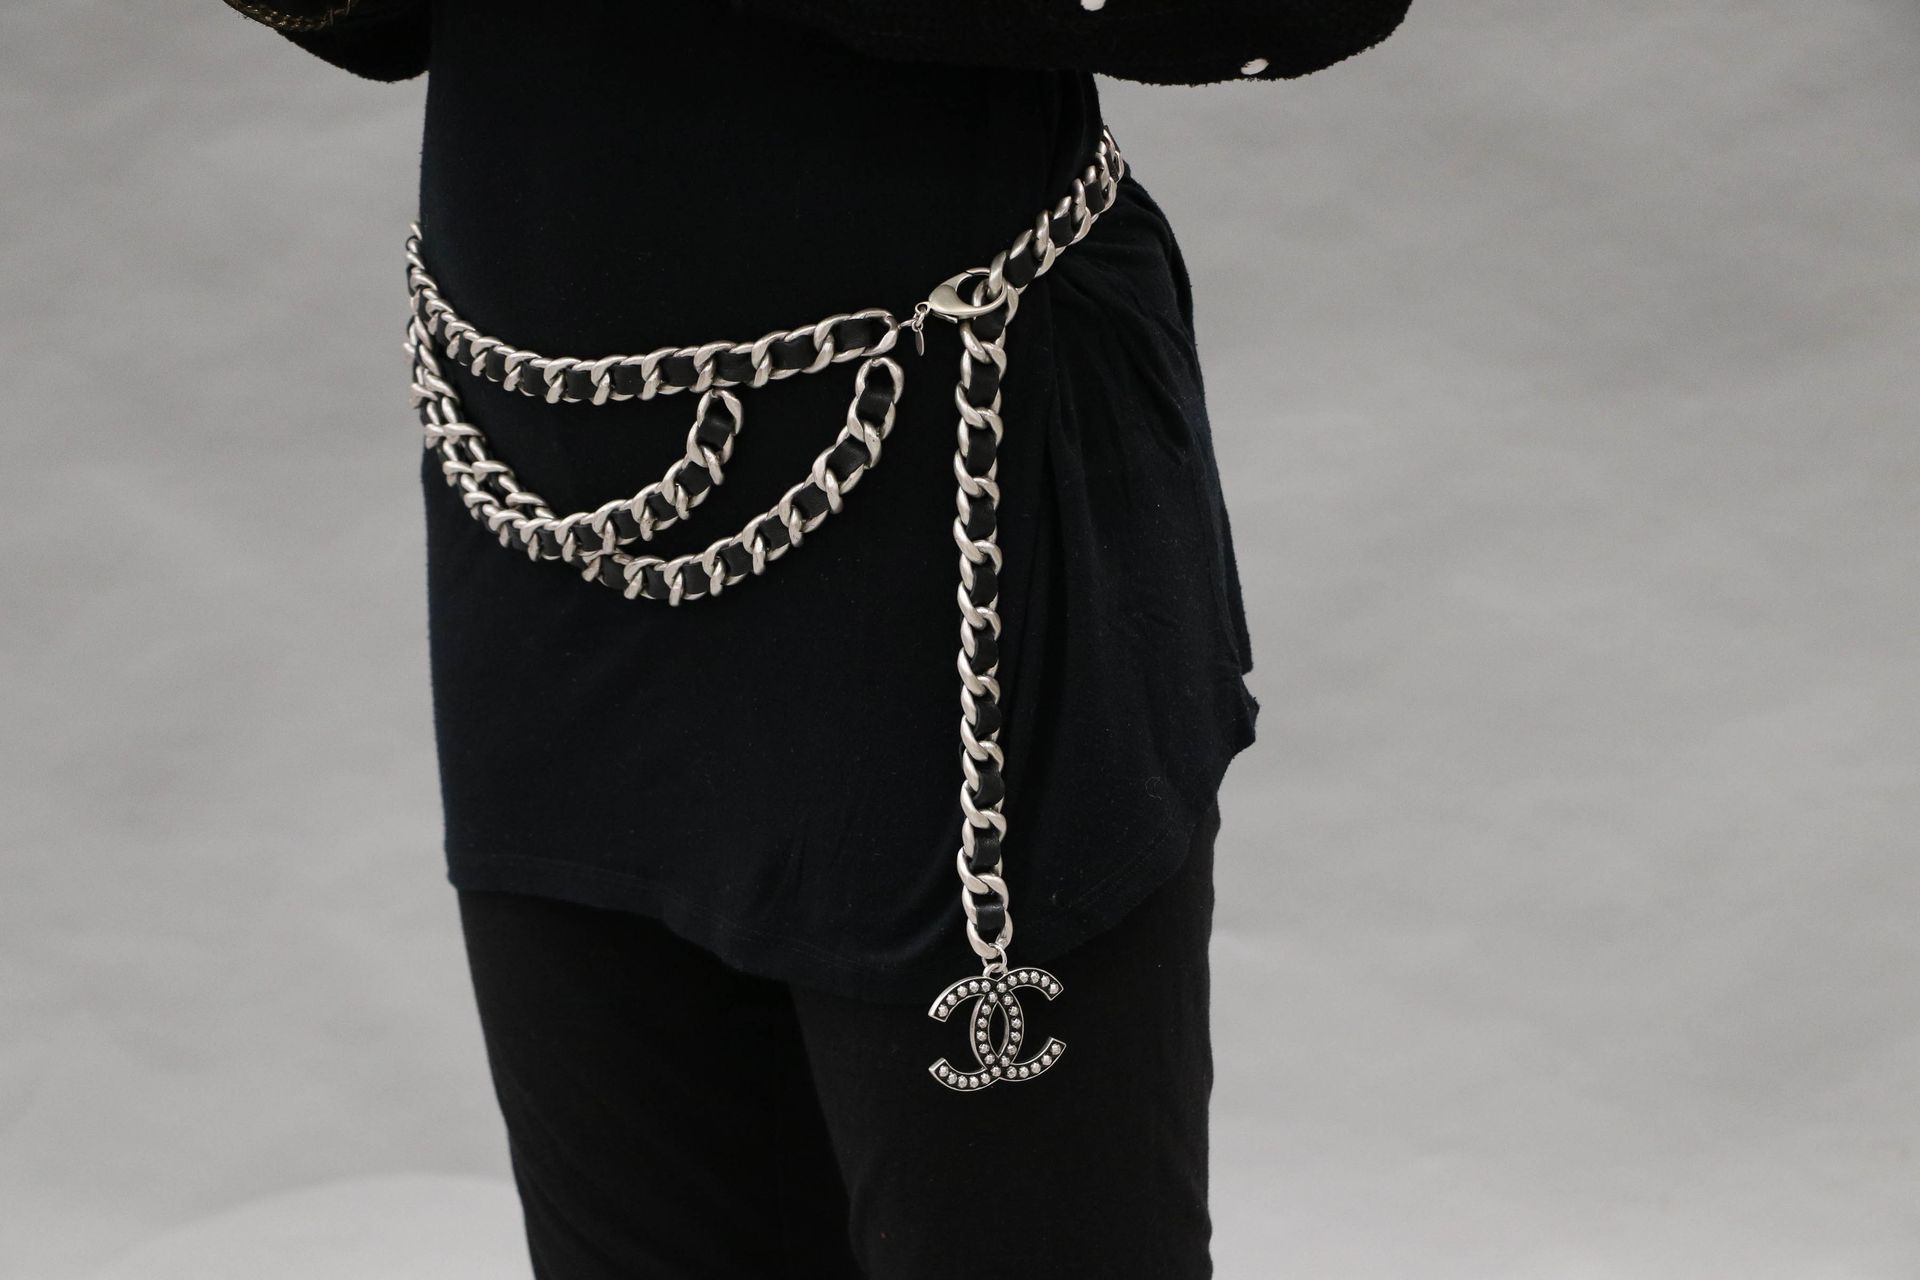 Null 香奈儿 - 约2010年 卡尔-拉格斐 - 镀银金属和黑色皮链的皮带或项链，黑色和银色珐琅的标志 - 长：100厘米